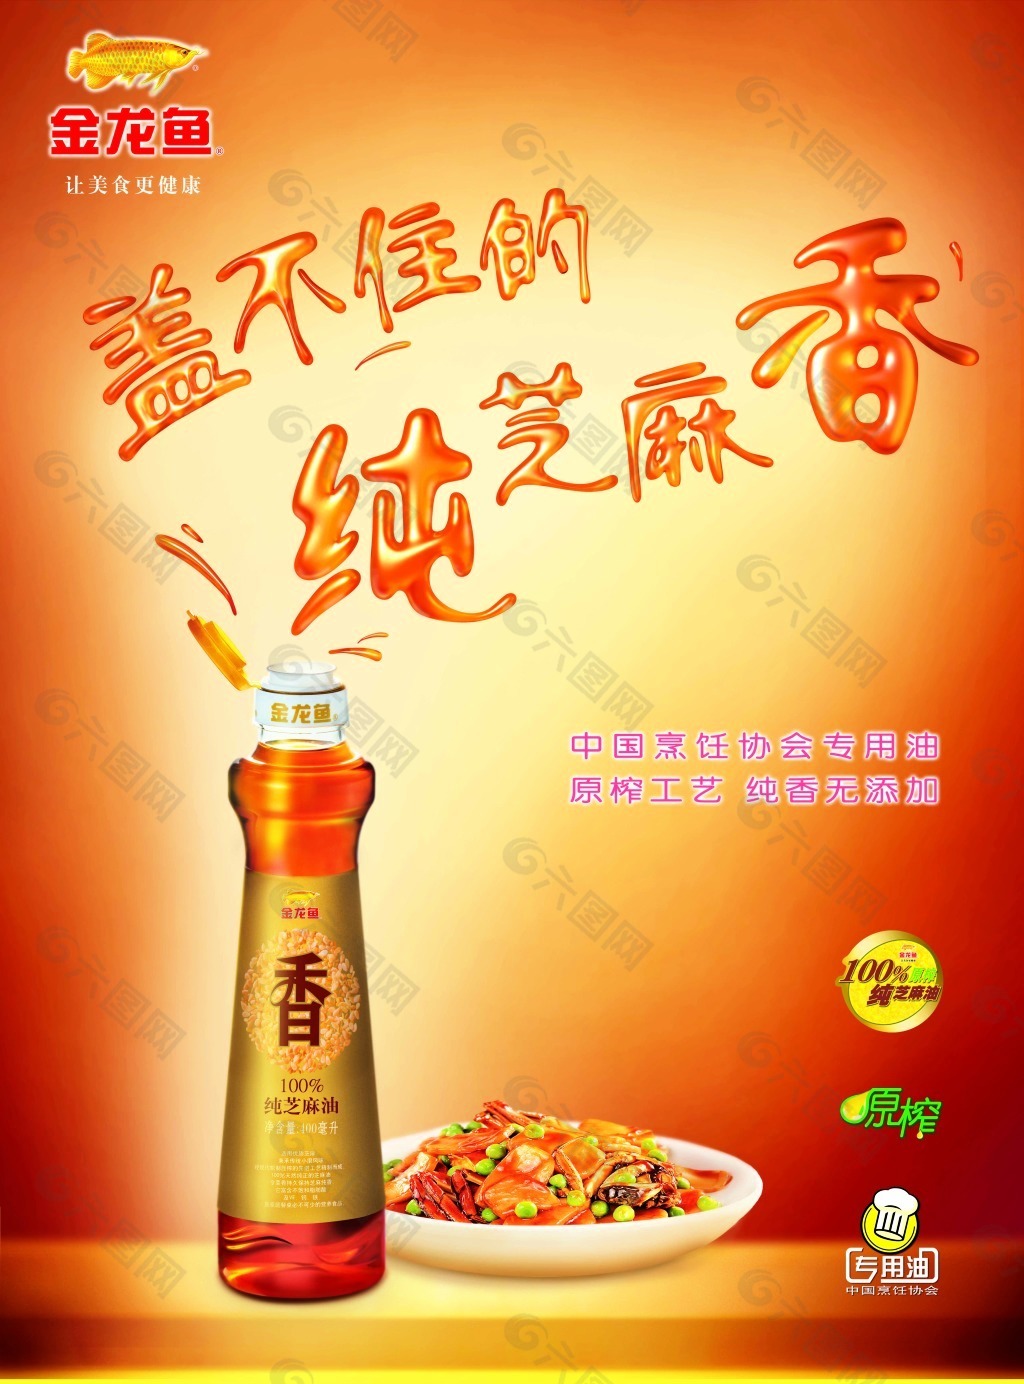 喜庆的金龙鱼芝麻油广告设计